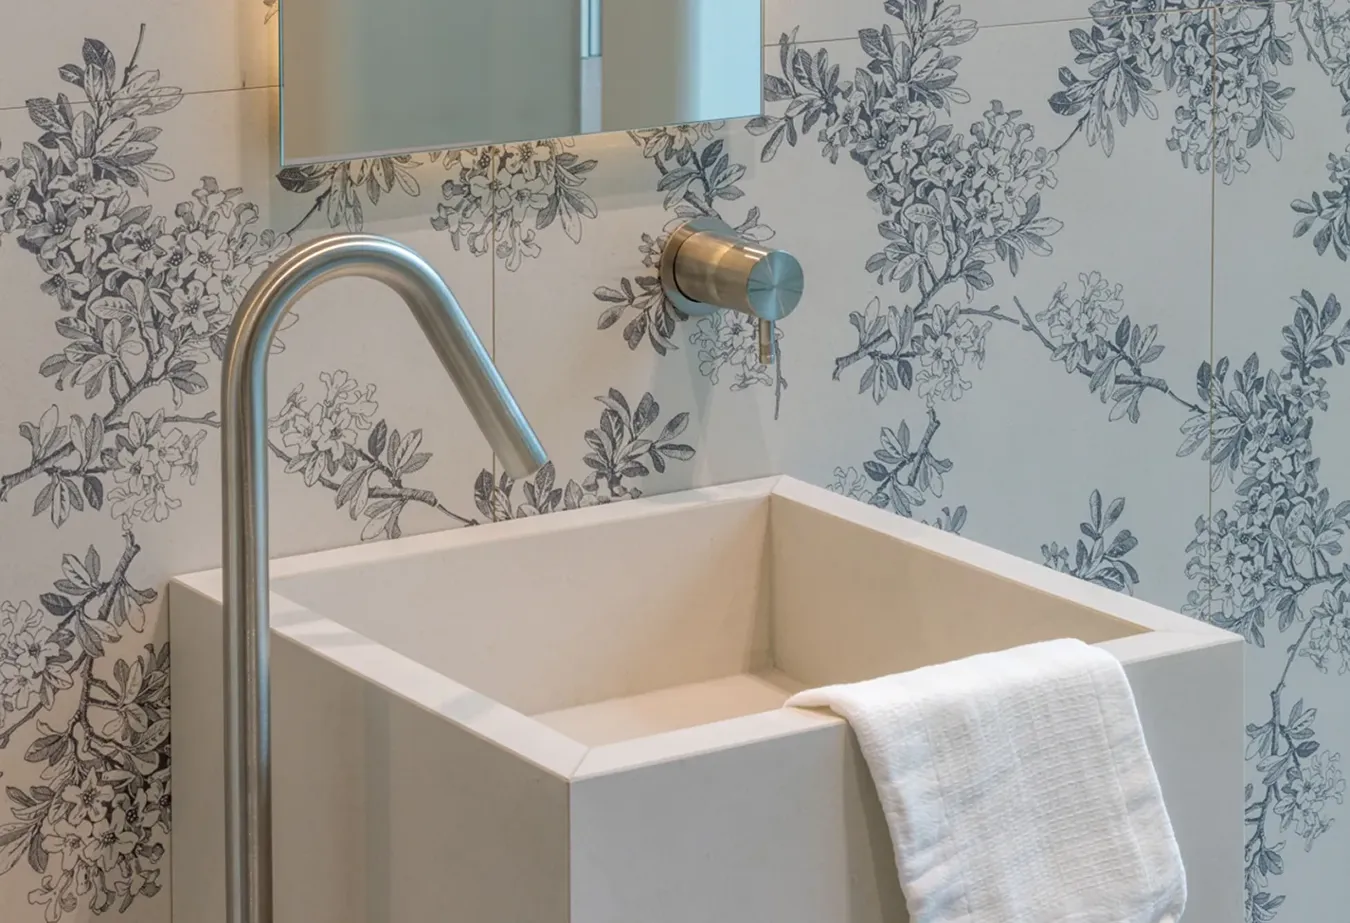 Piastrella effetto legno decorato, serie Journey, in elegante bagno moderno con rubinetteria raffinata.